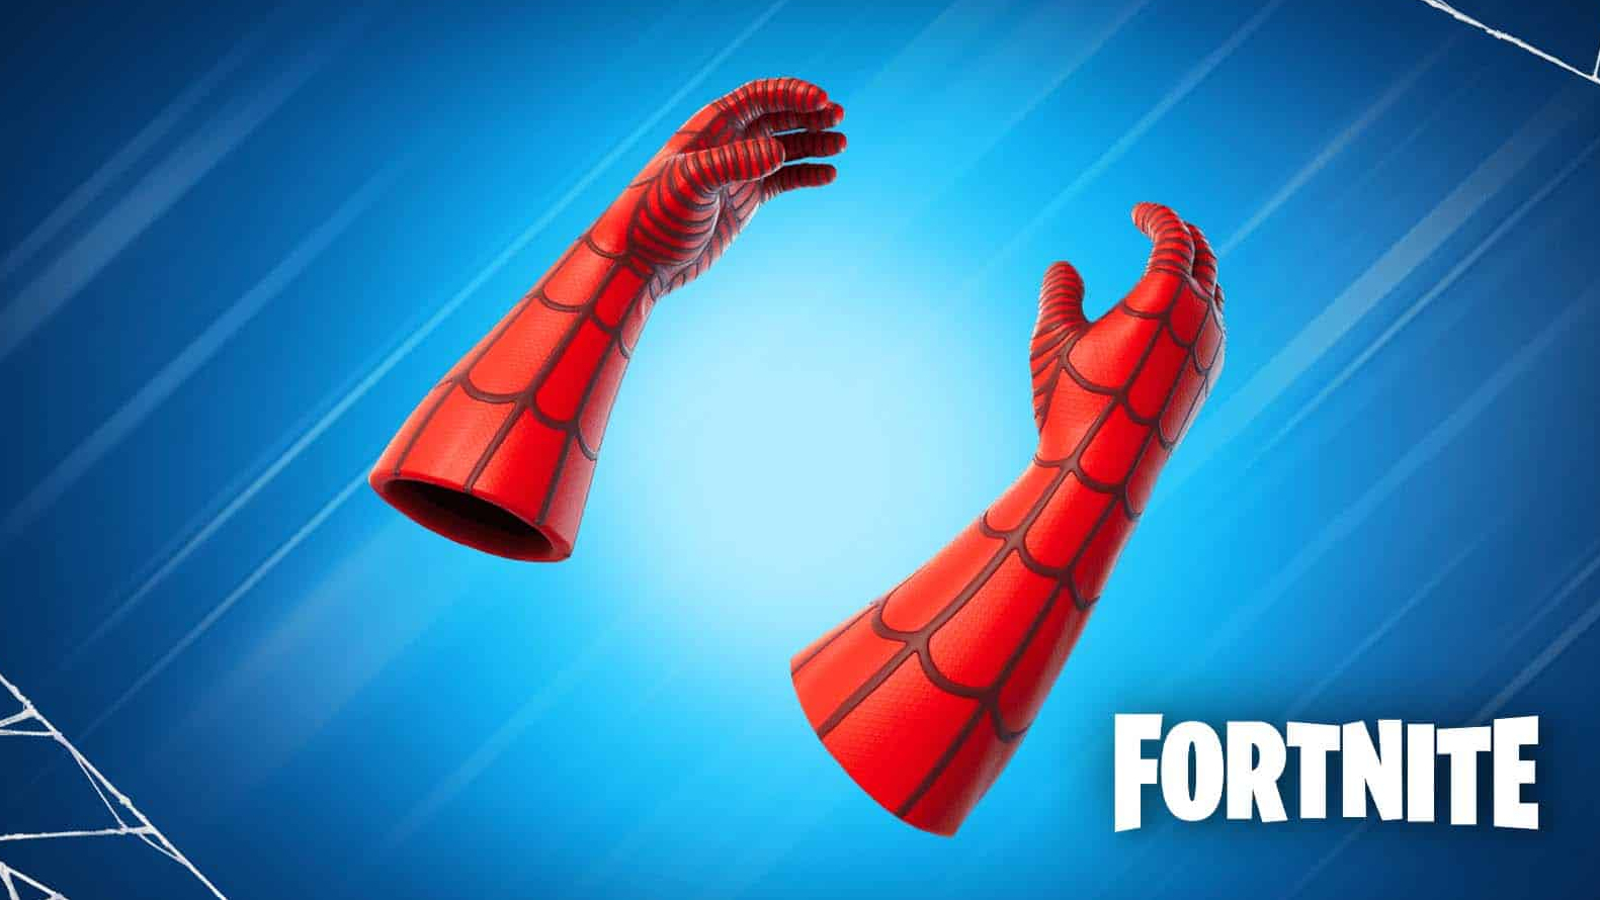 Fortnite receberá uma skin do Homem-Aranha?